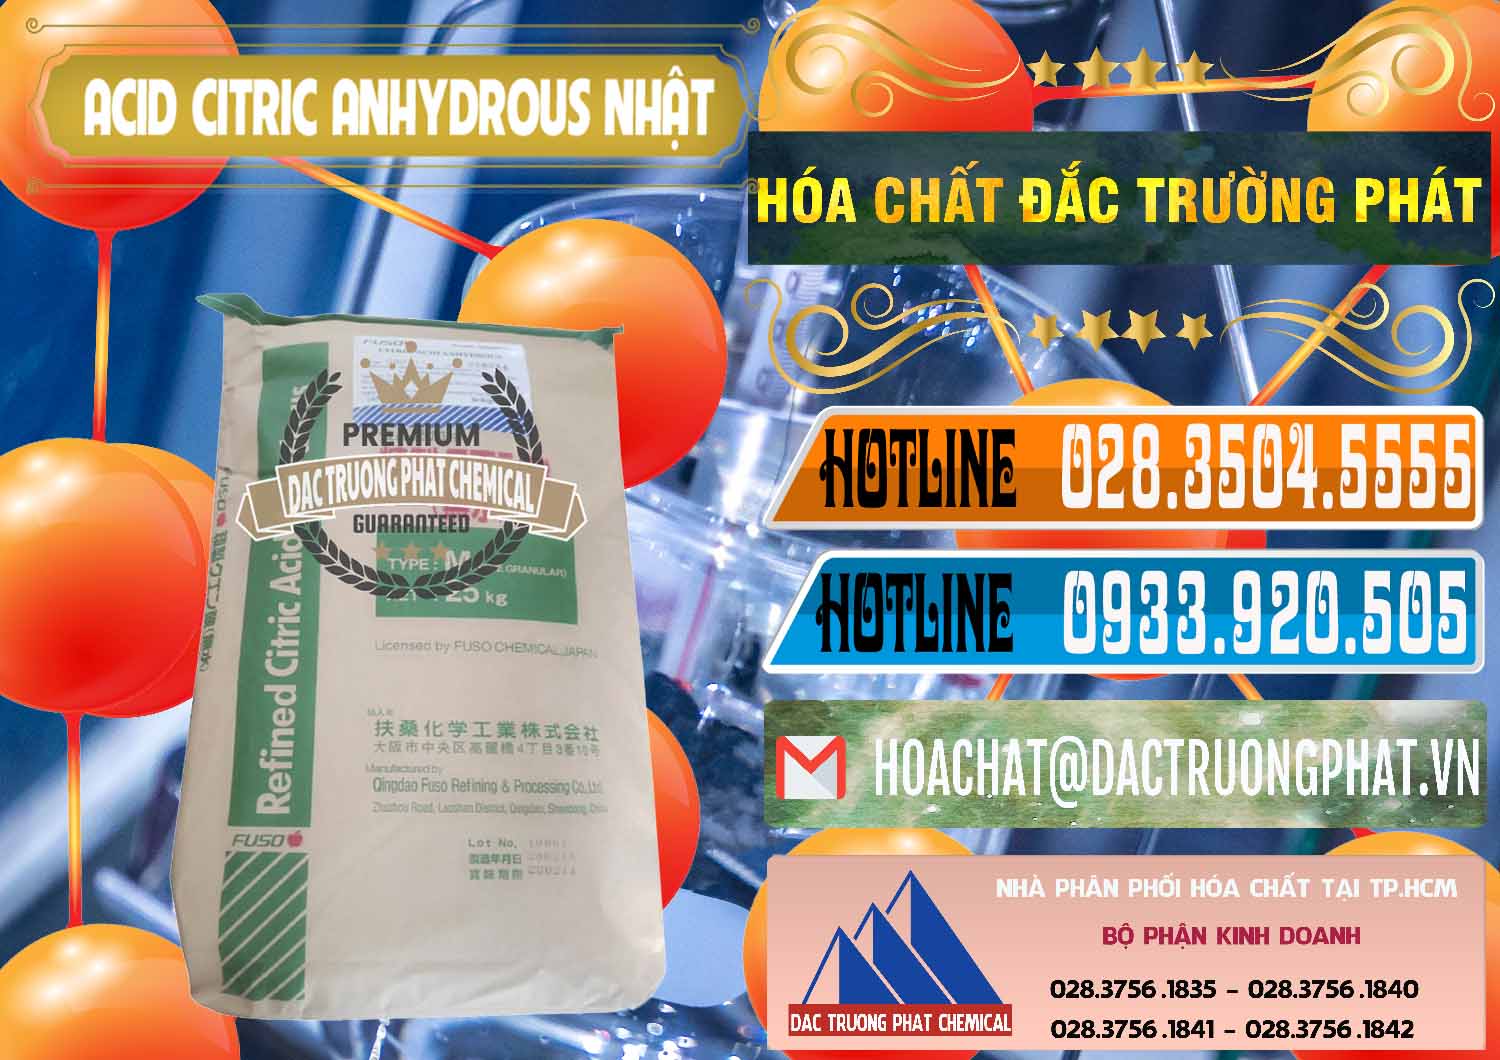 Nơi chuyên kinh doanh & bán Acid Citric - Axit Citric Anhydrous FUSO Nhật Japan - 0439 - Đơn vị chuyên phân phối & cung ứng hóa chất tại TP.HCM - stmp.net